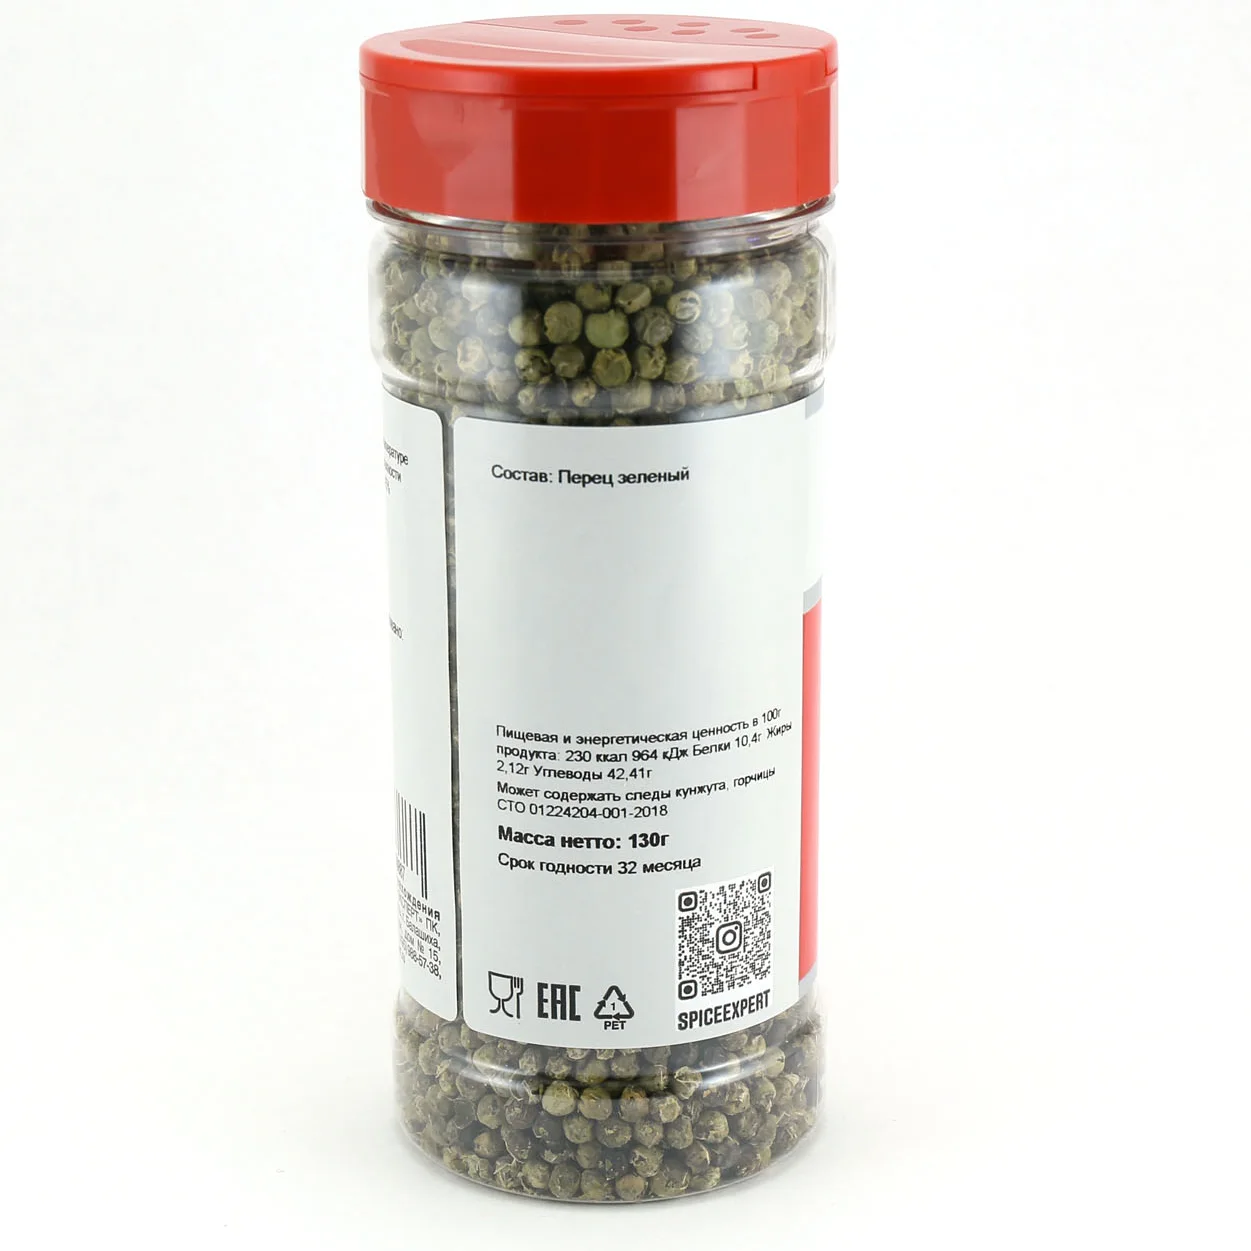 Green peas pepper 130g (360ml) SPICEXPERT bank